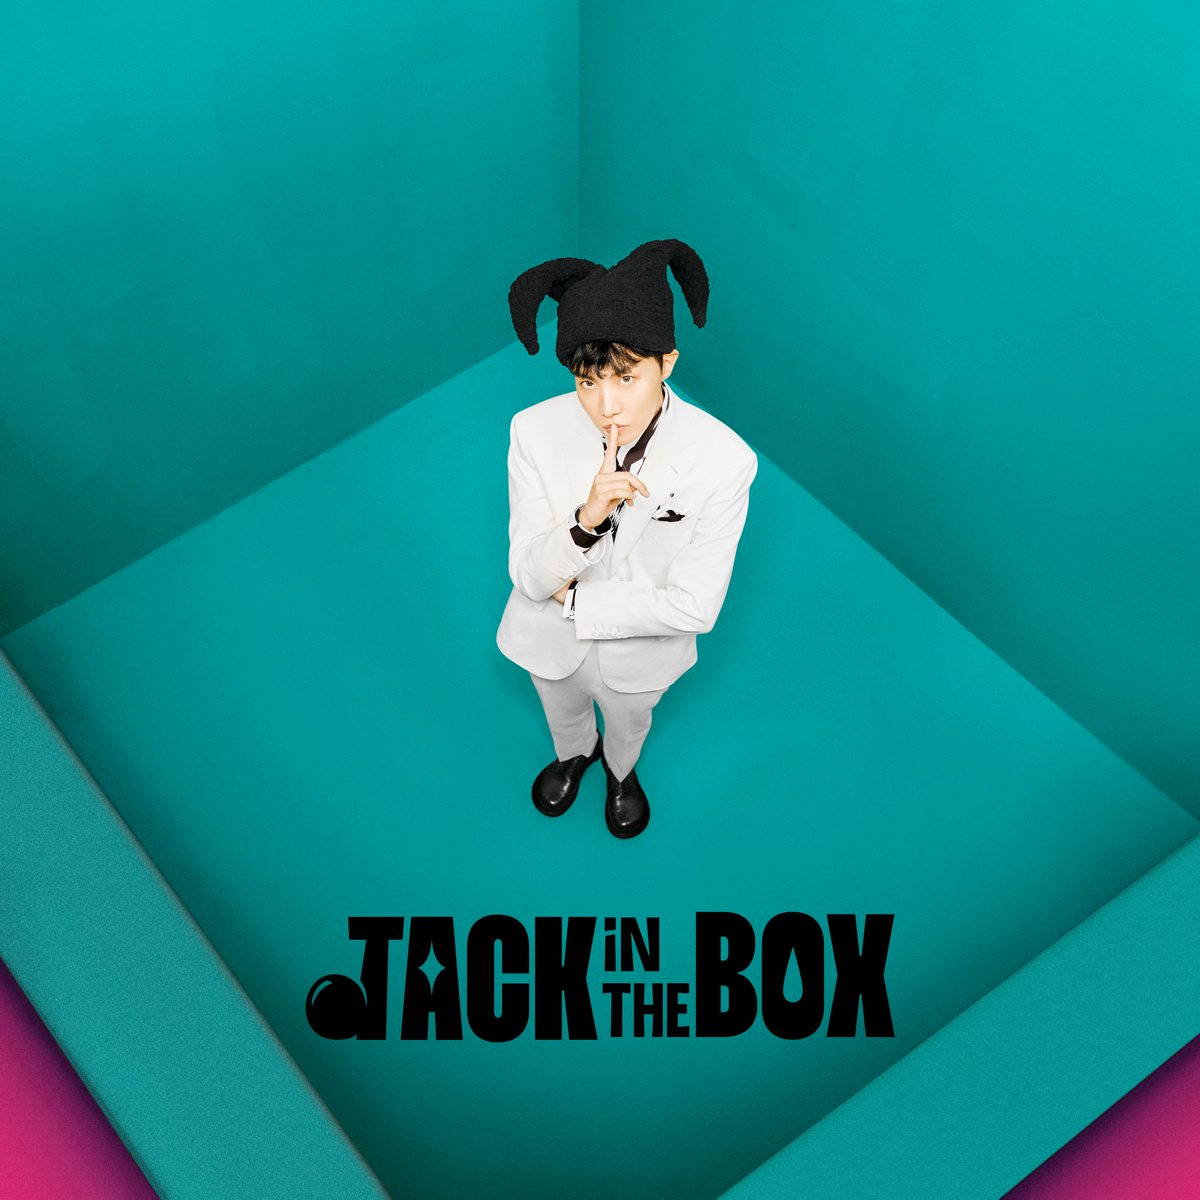 [공지] j-hope 솔로 앨범 'Jack In The Box' 예약 구매 안내 (+ENG/JPN/CHN) weverse.onelink.me/qt3S/kxv0qx9i #jhope #제이홉 #JackInTheBox